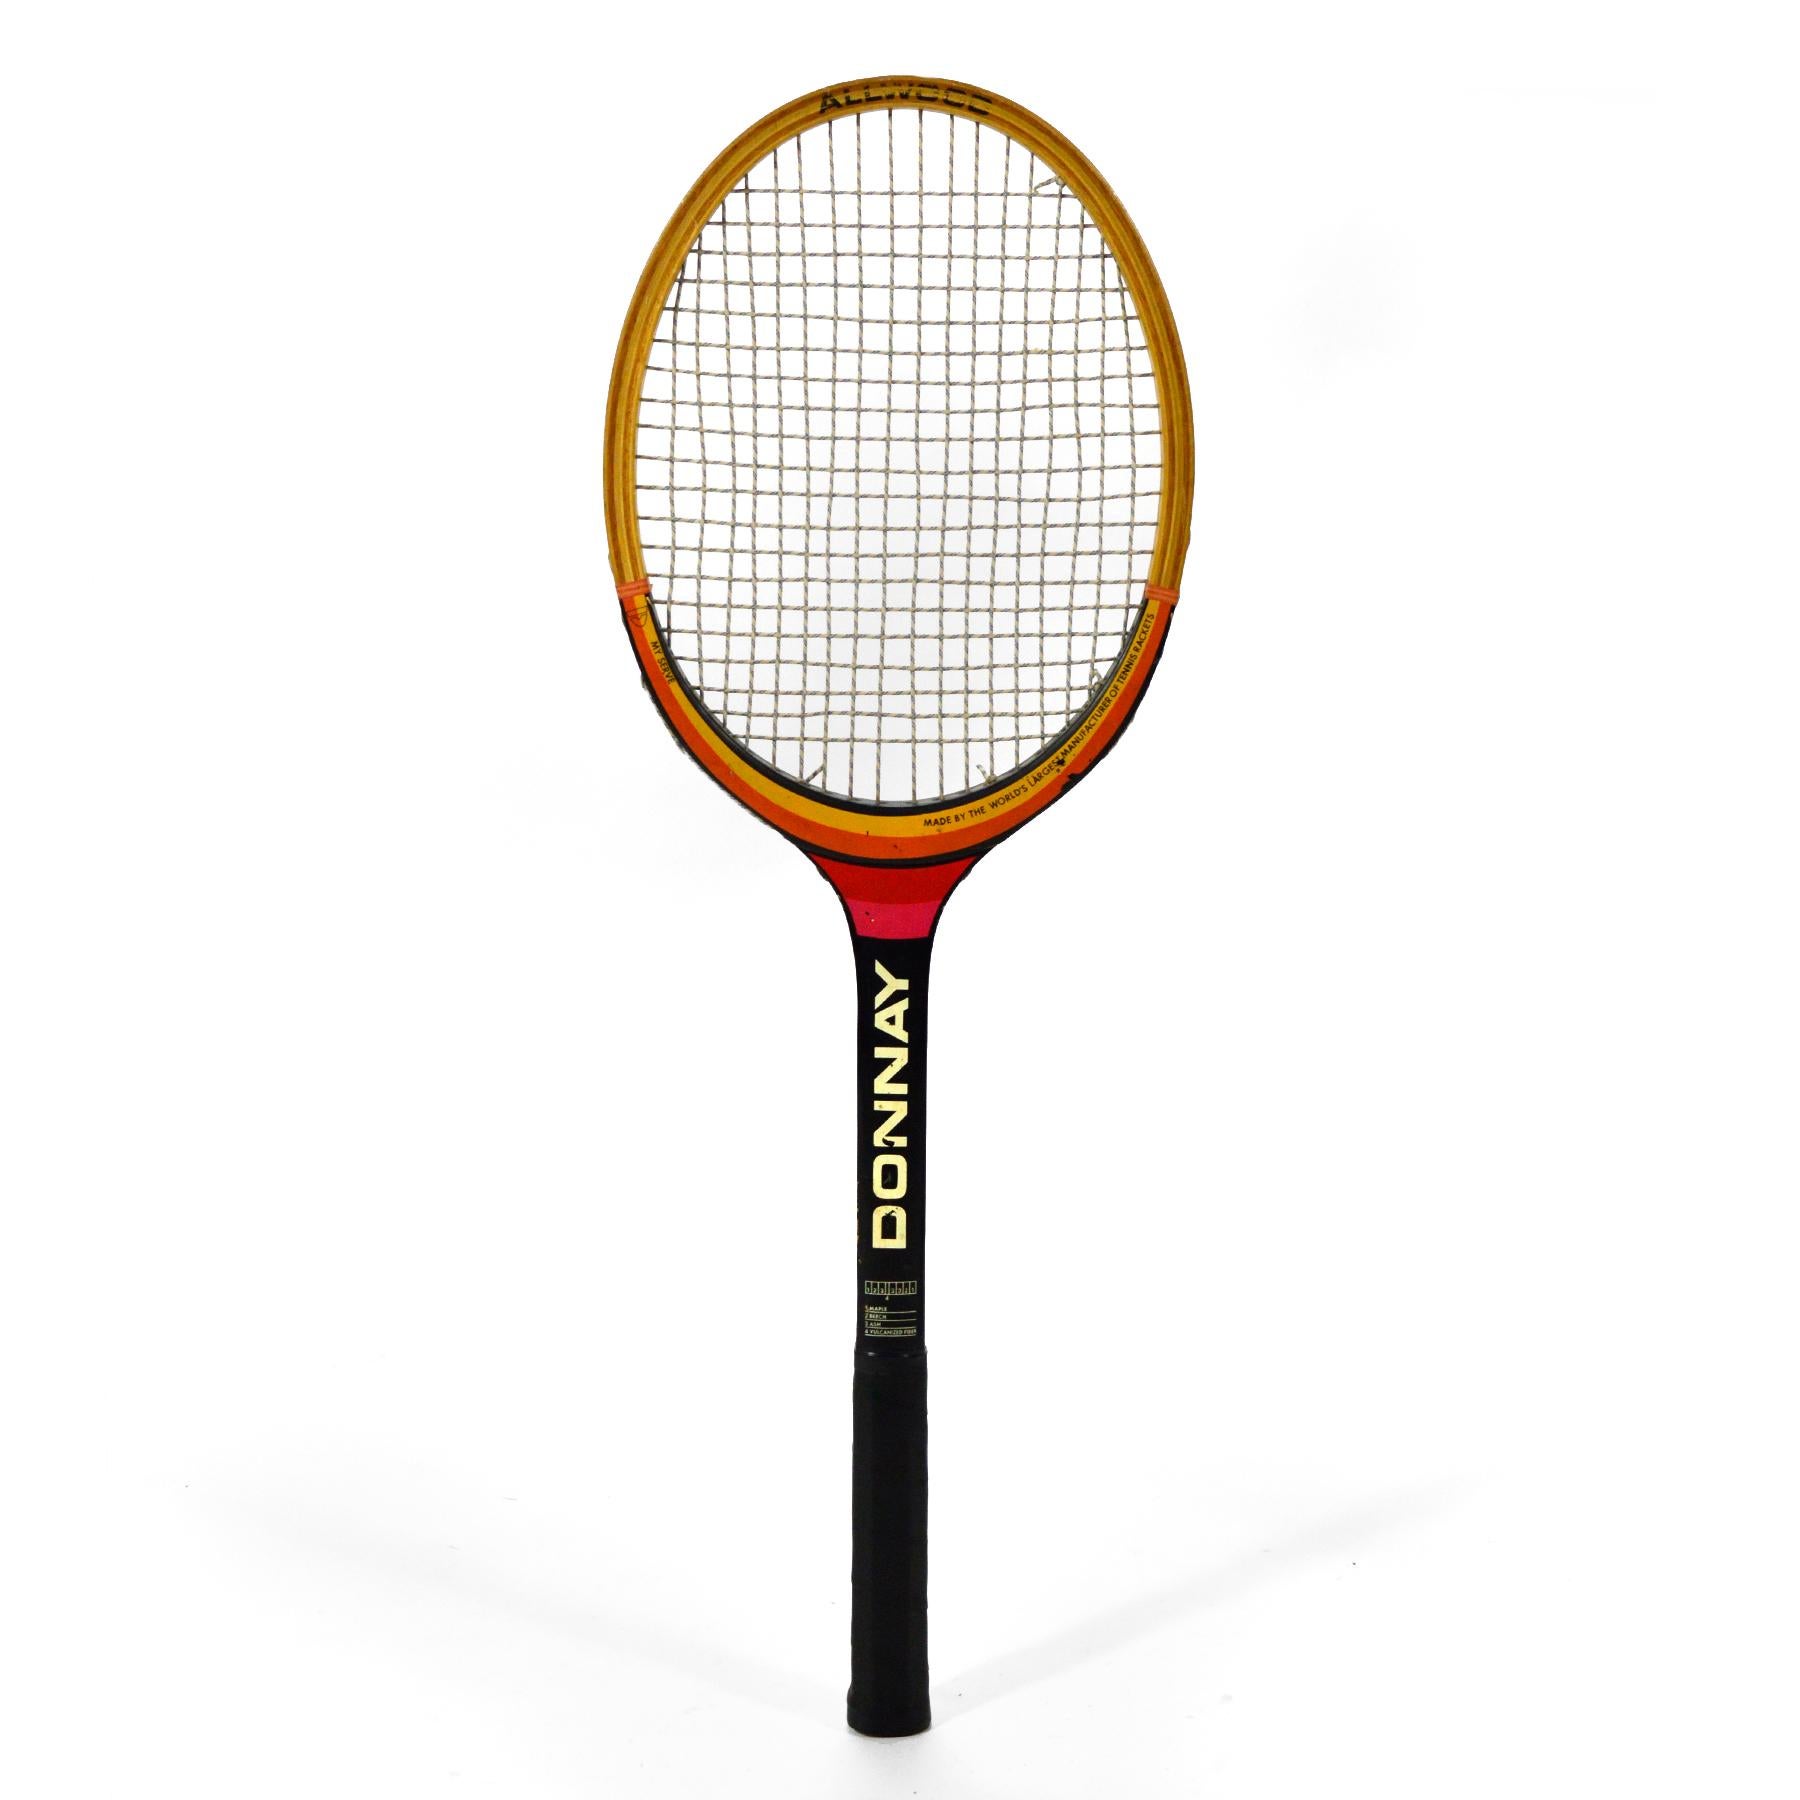 donnay tennis racket vintage